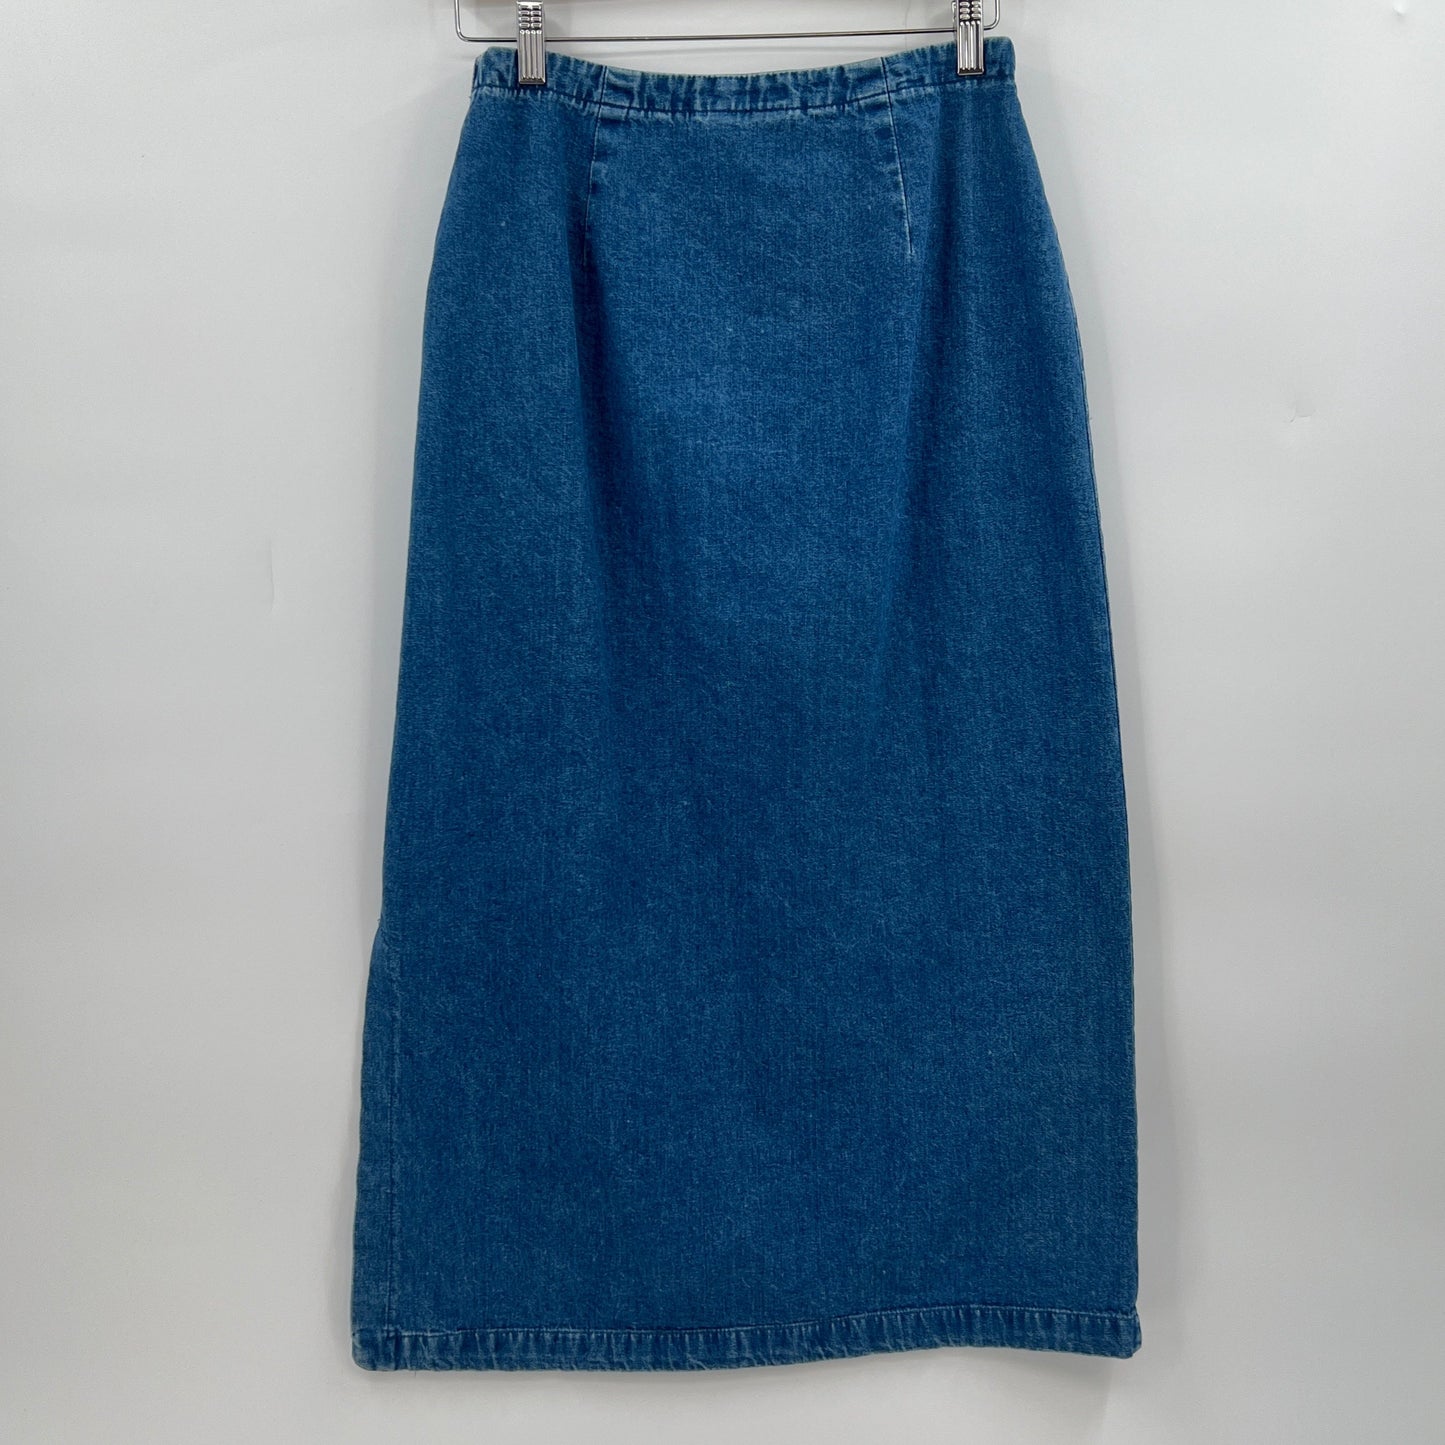 SOLD. Vintage Eddie Bauer Denim Midi/Maxi Skirt